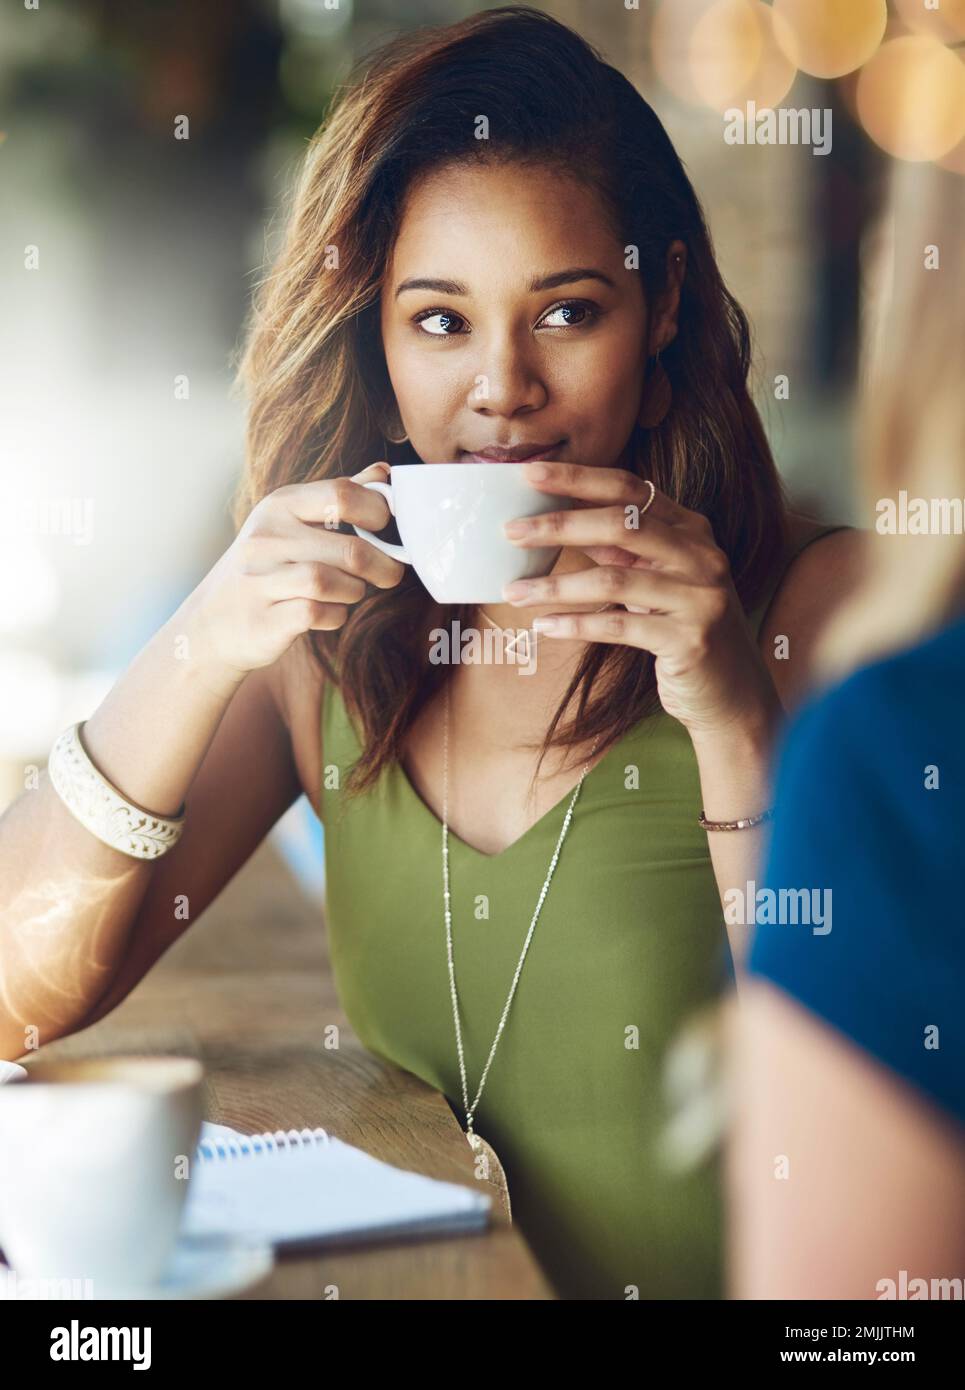 Con il caffè in mano, im tutte le orecchie. una donna che chiacchiera con la sua amica in un bar. Foto Stock